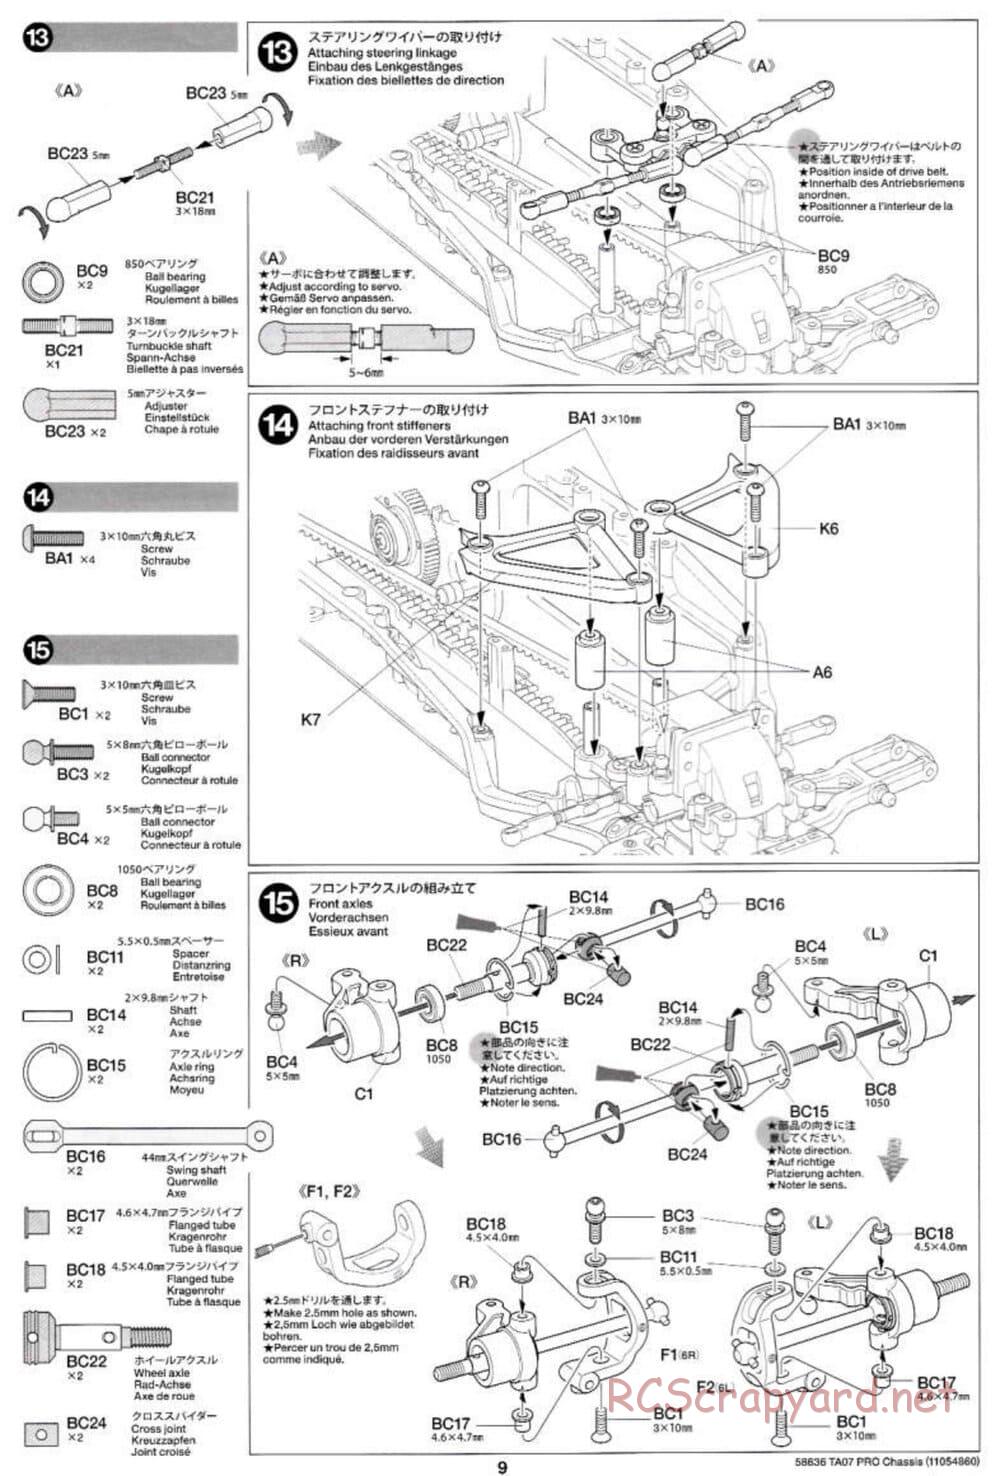 Tamiya - TA07 Pro Chassis - Manual - Page 9